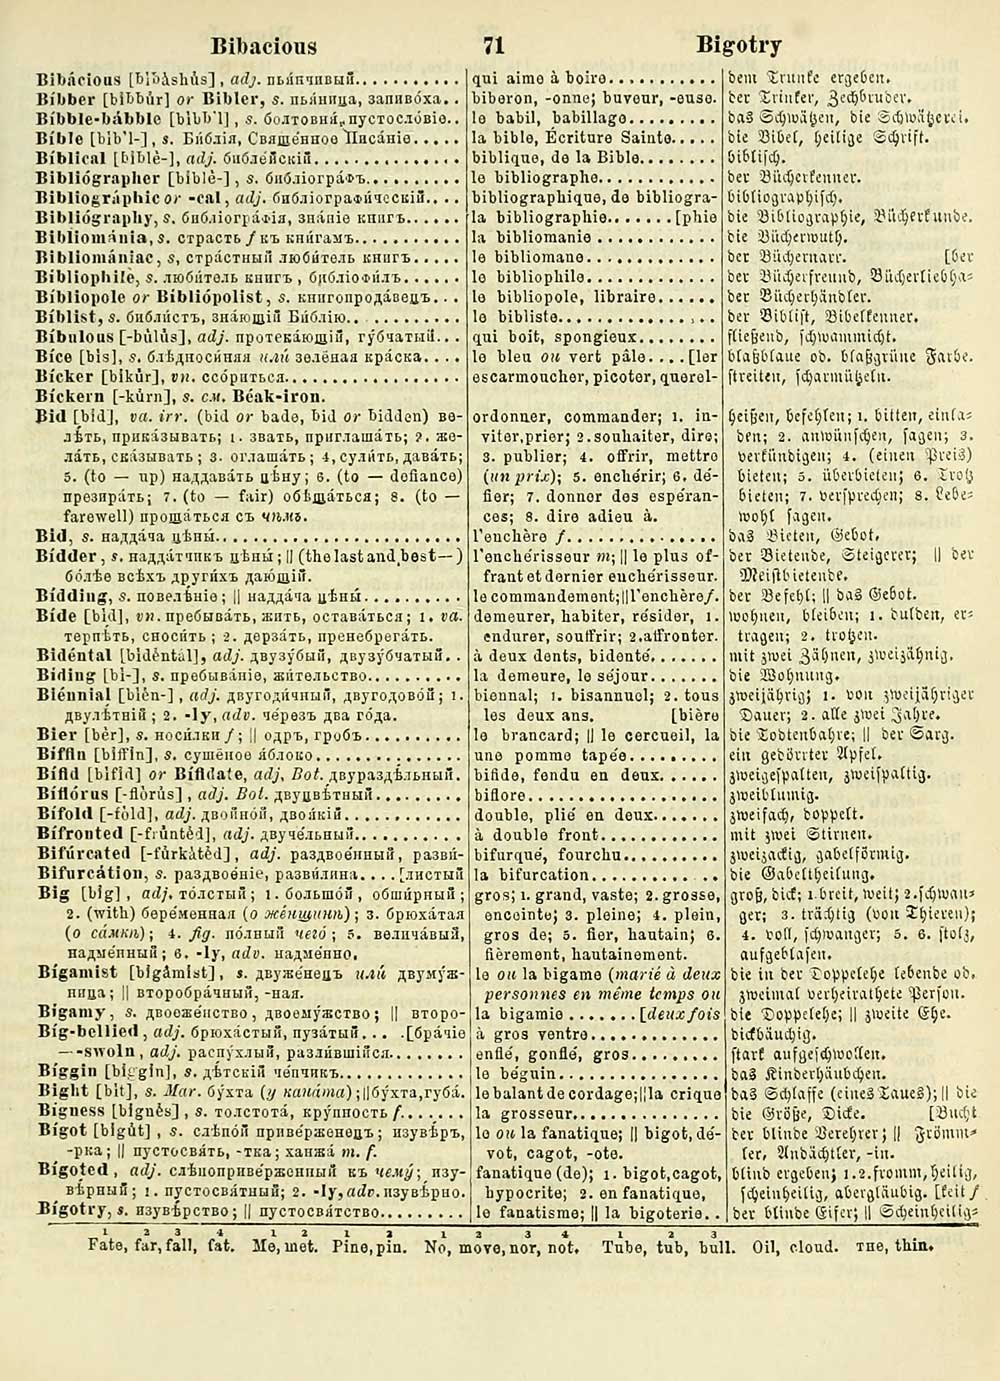 dictionaries english russian